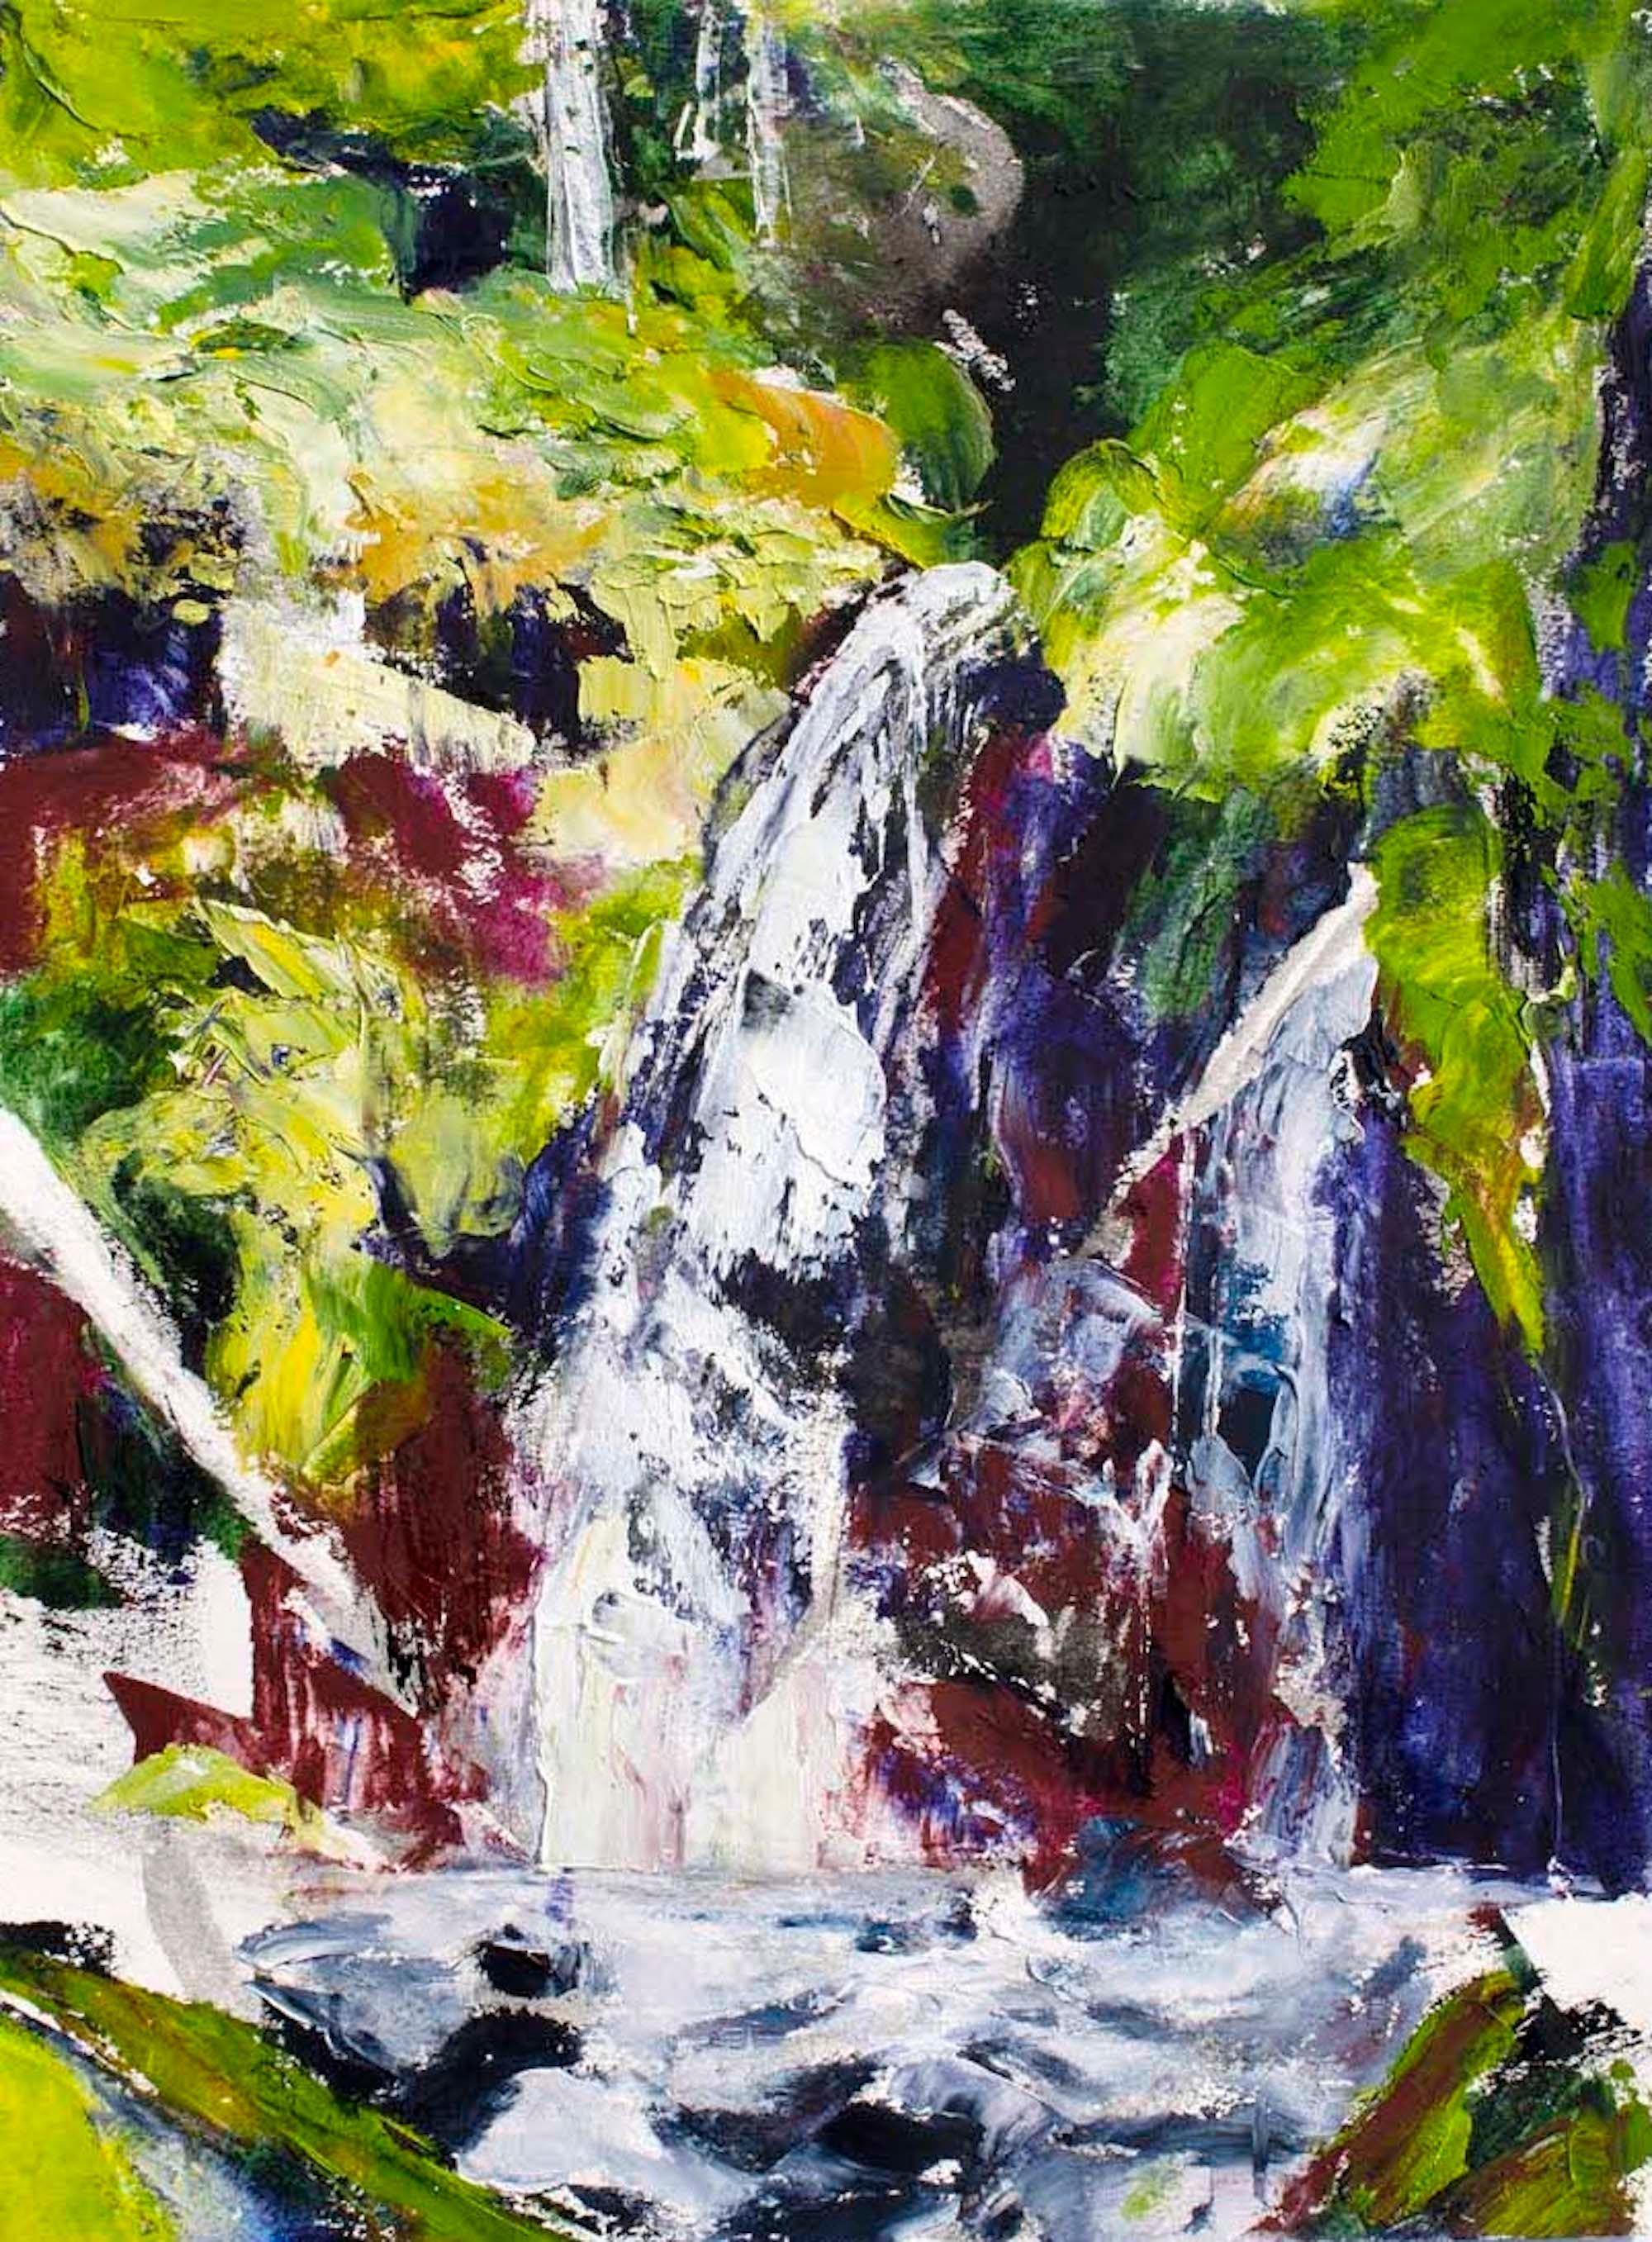 <p>Commentaires de l'artiste<br>L'artiste Tiffany Blaise représente une vue expressionniste d'une chute d'eau dynamique. La cascade rapide se transforme en un ruisseau rafraîchissant de la forêt tropicale, peint dans des teintes lumineuses. La